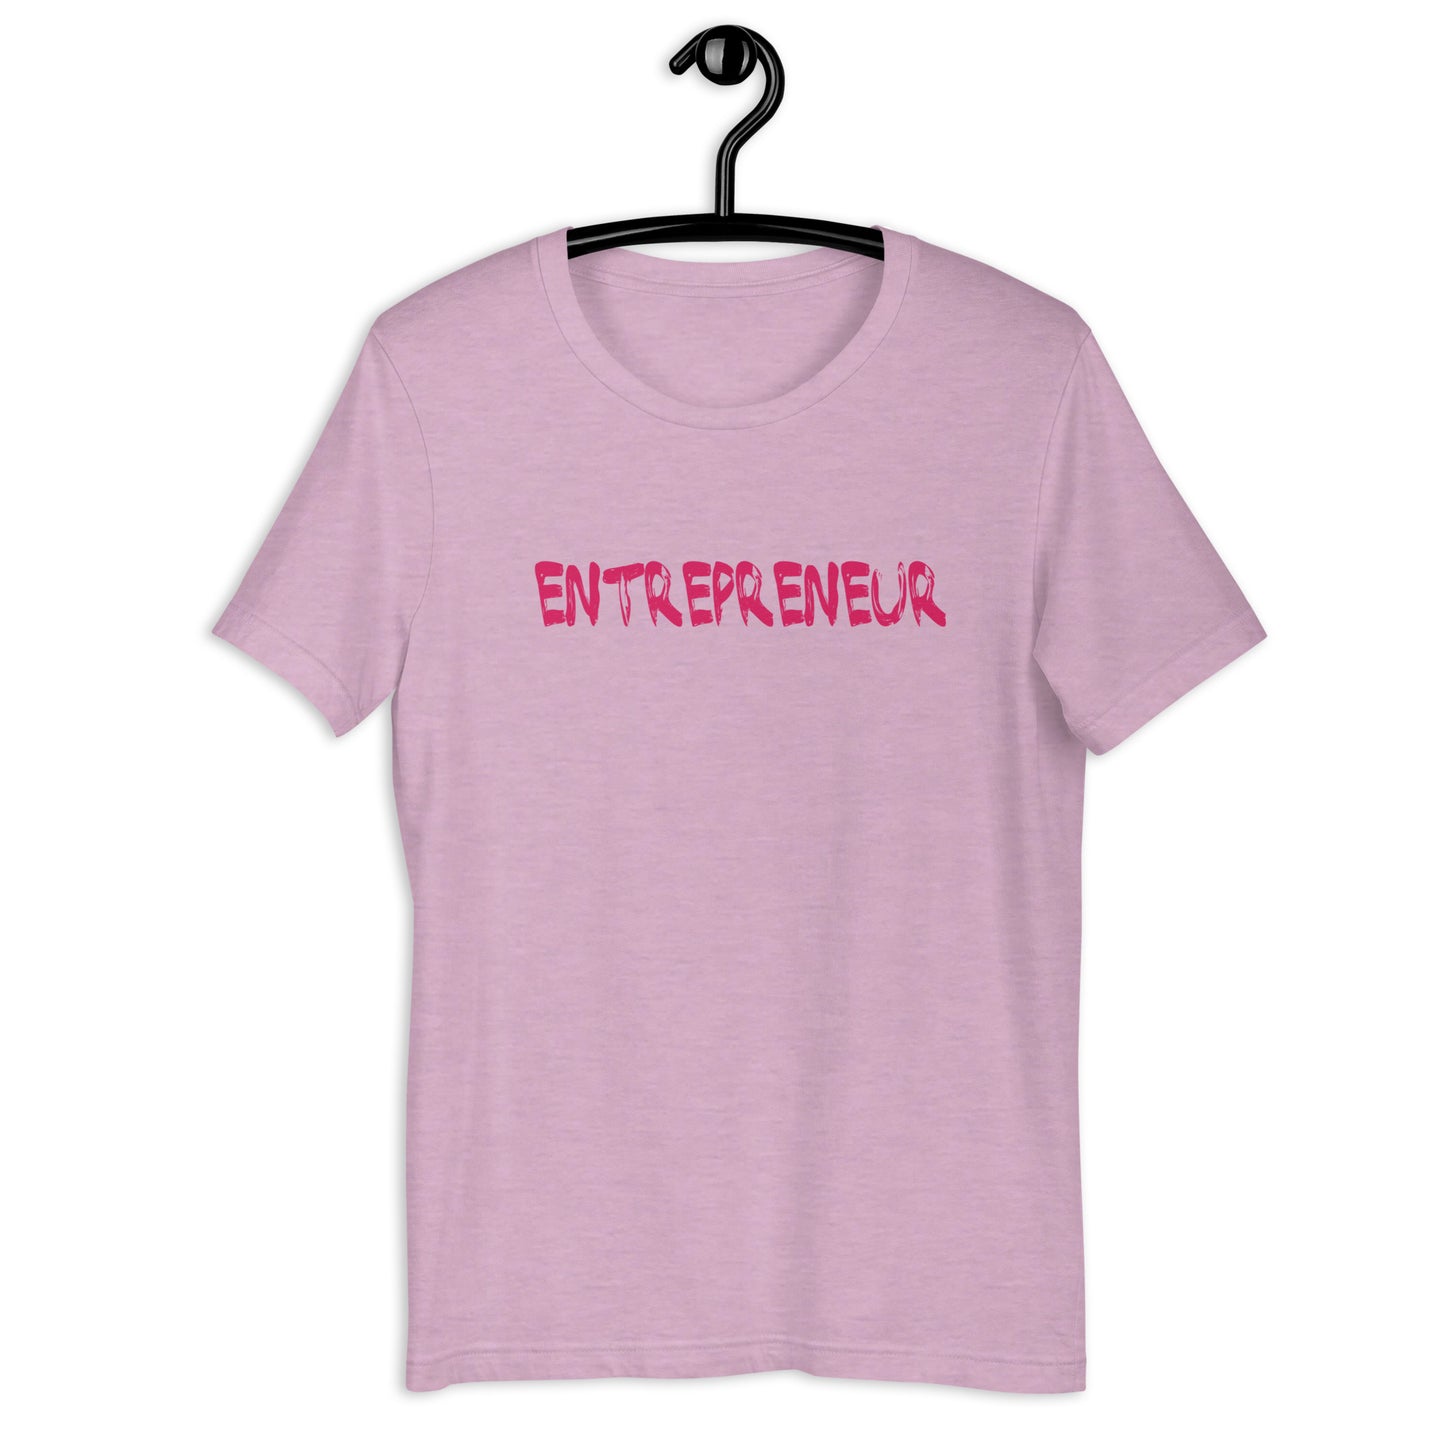 Entrepreneur unisex t-shirt